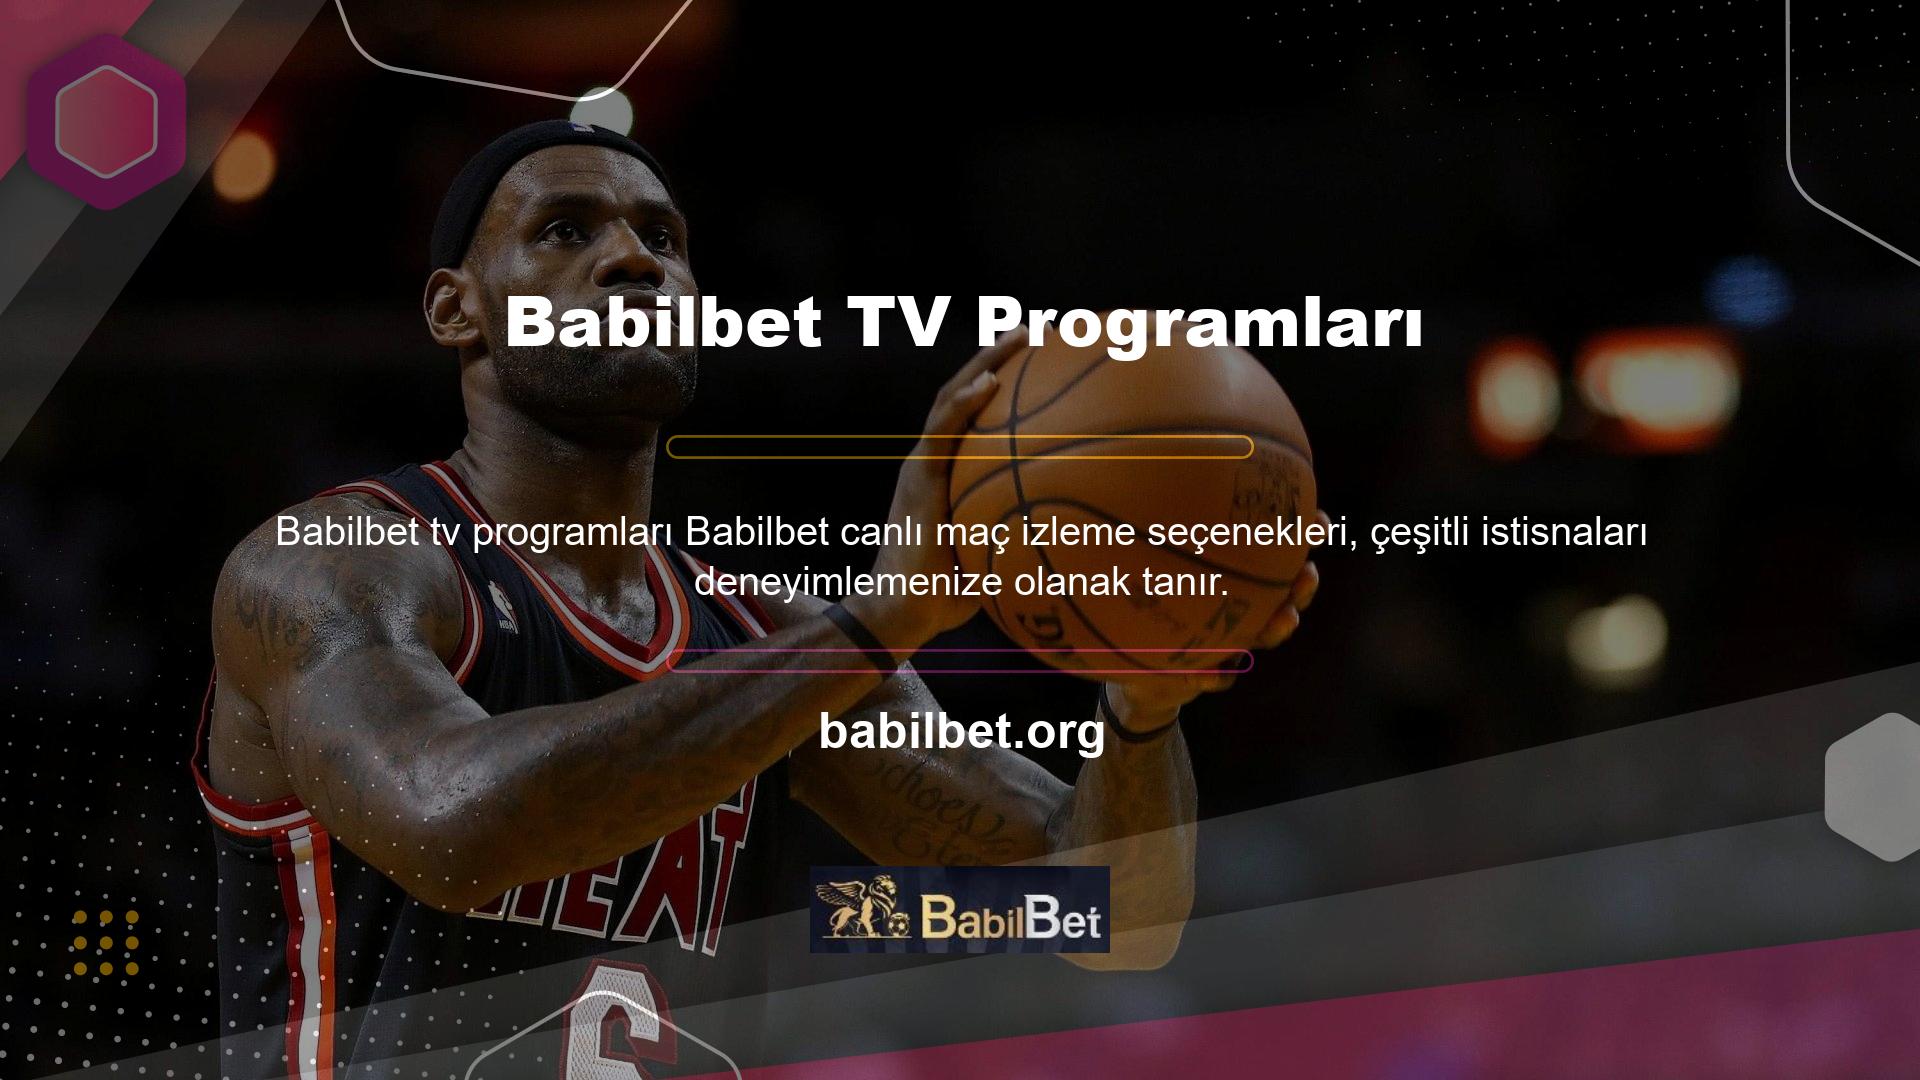 Maç izleme olanağının yanı sıra Babilbet TV yayın akışları da mevcut olup, site üzerinden gelecek maçları izleyebilirsiniz